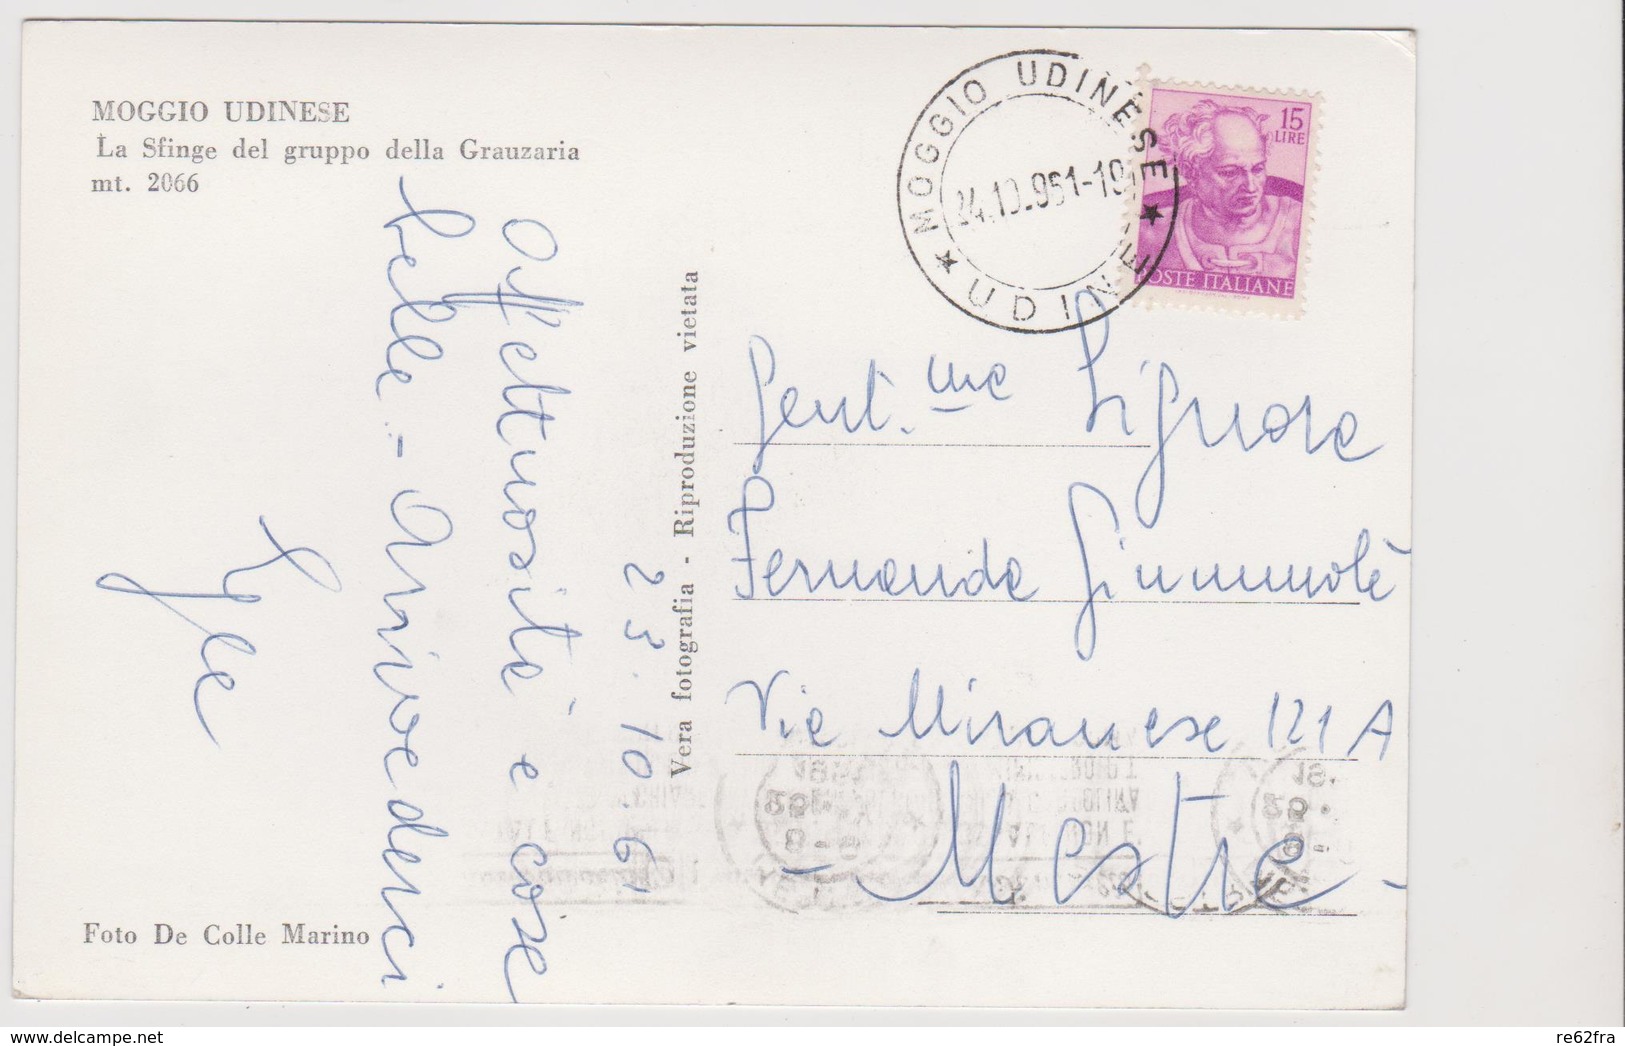 MOGGIO UDINESE  (UD) , Lotto 4 cartoline  - F.G.  - anni  '1940/'1950